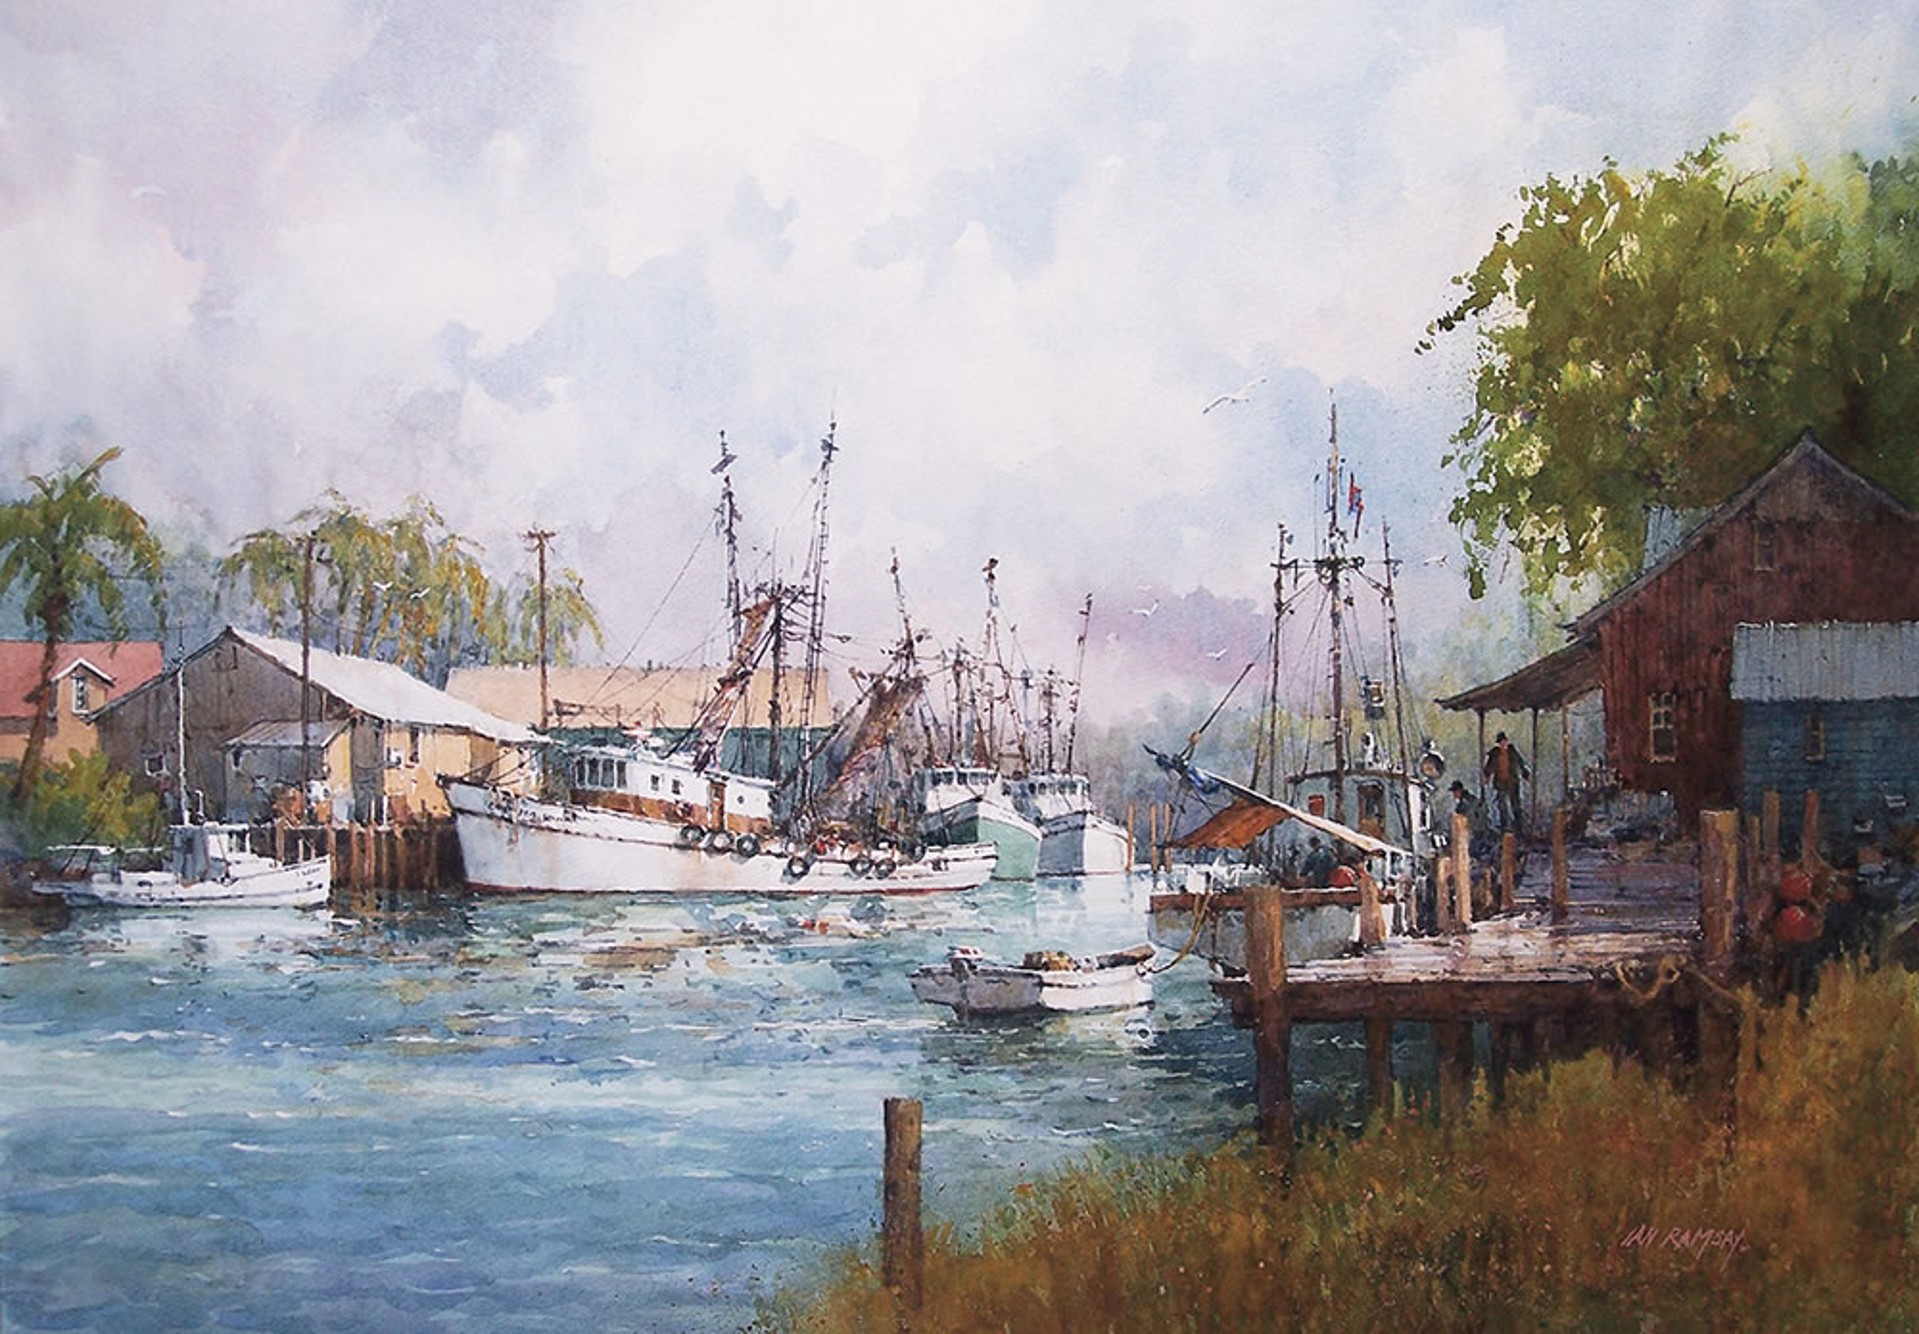 River Dock-South Carolina by Ian Ramsay